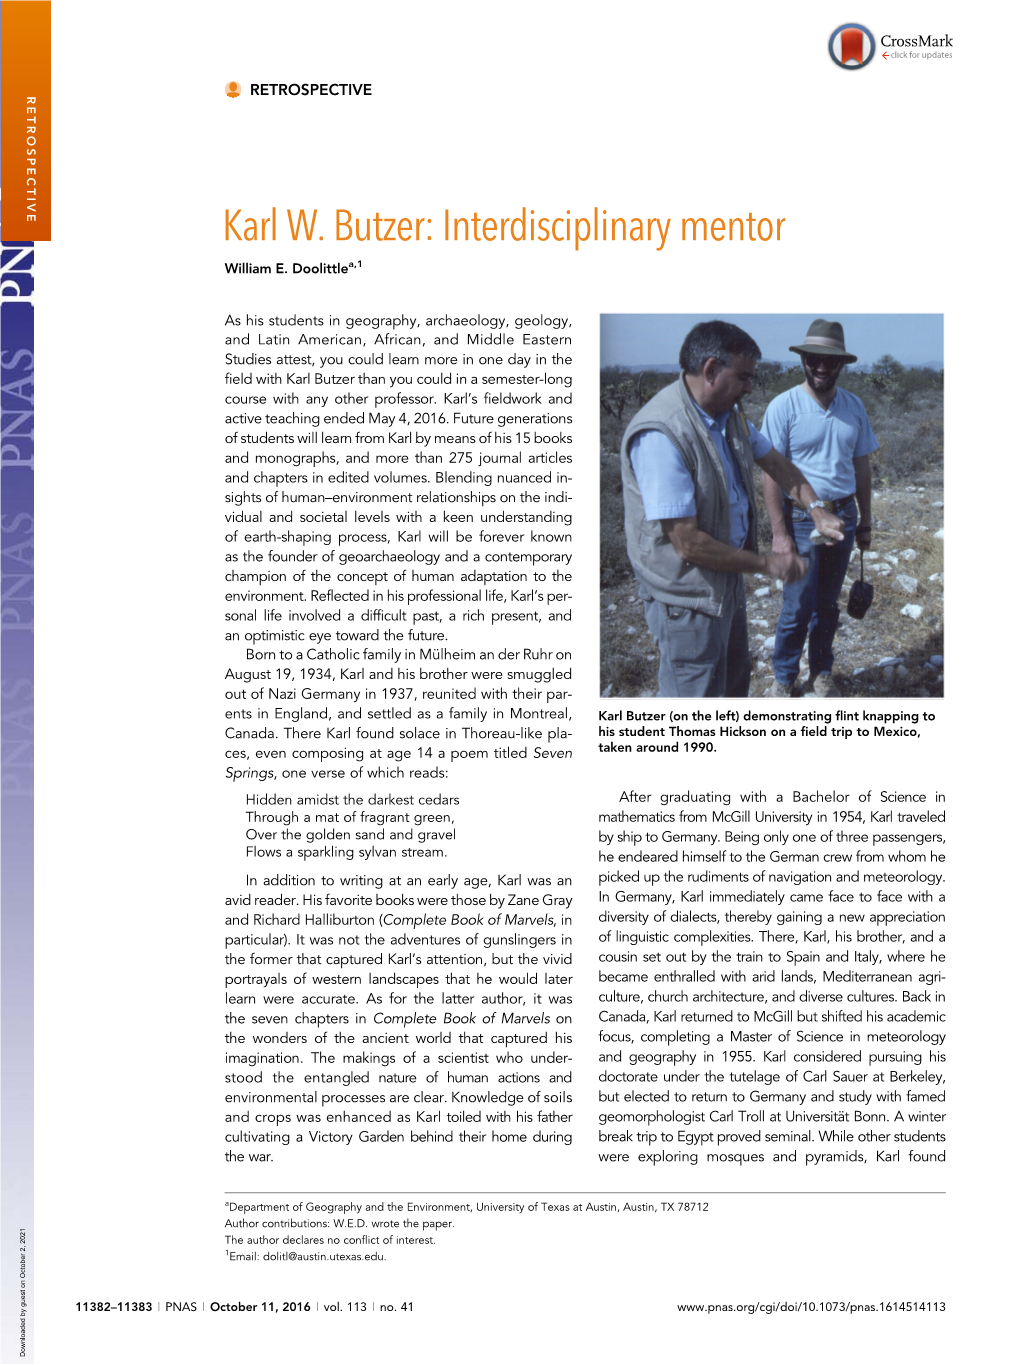 Karl W. Butzer: Interdisciplinary Mentor